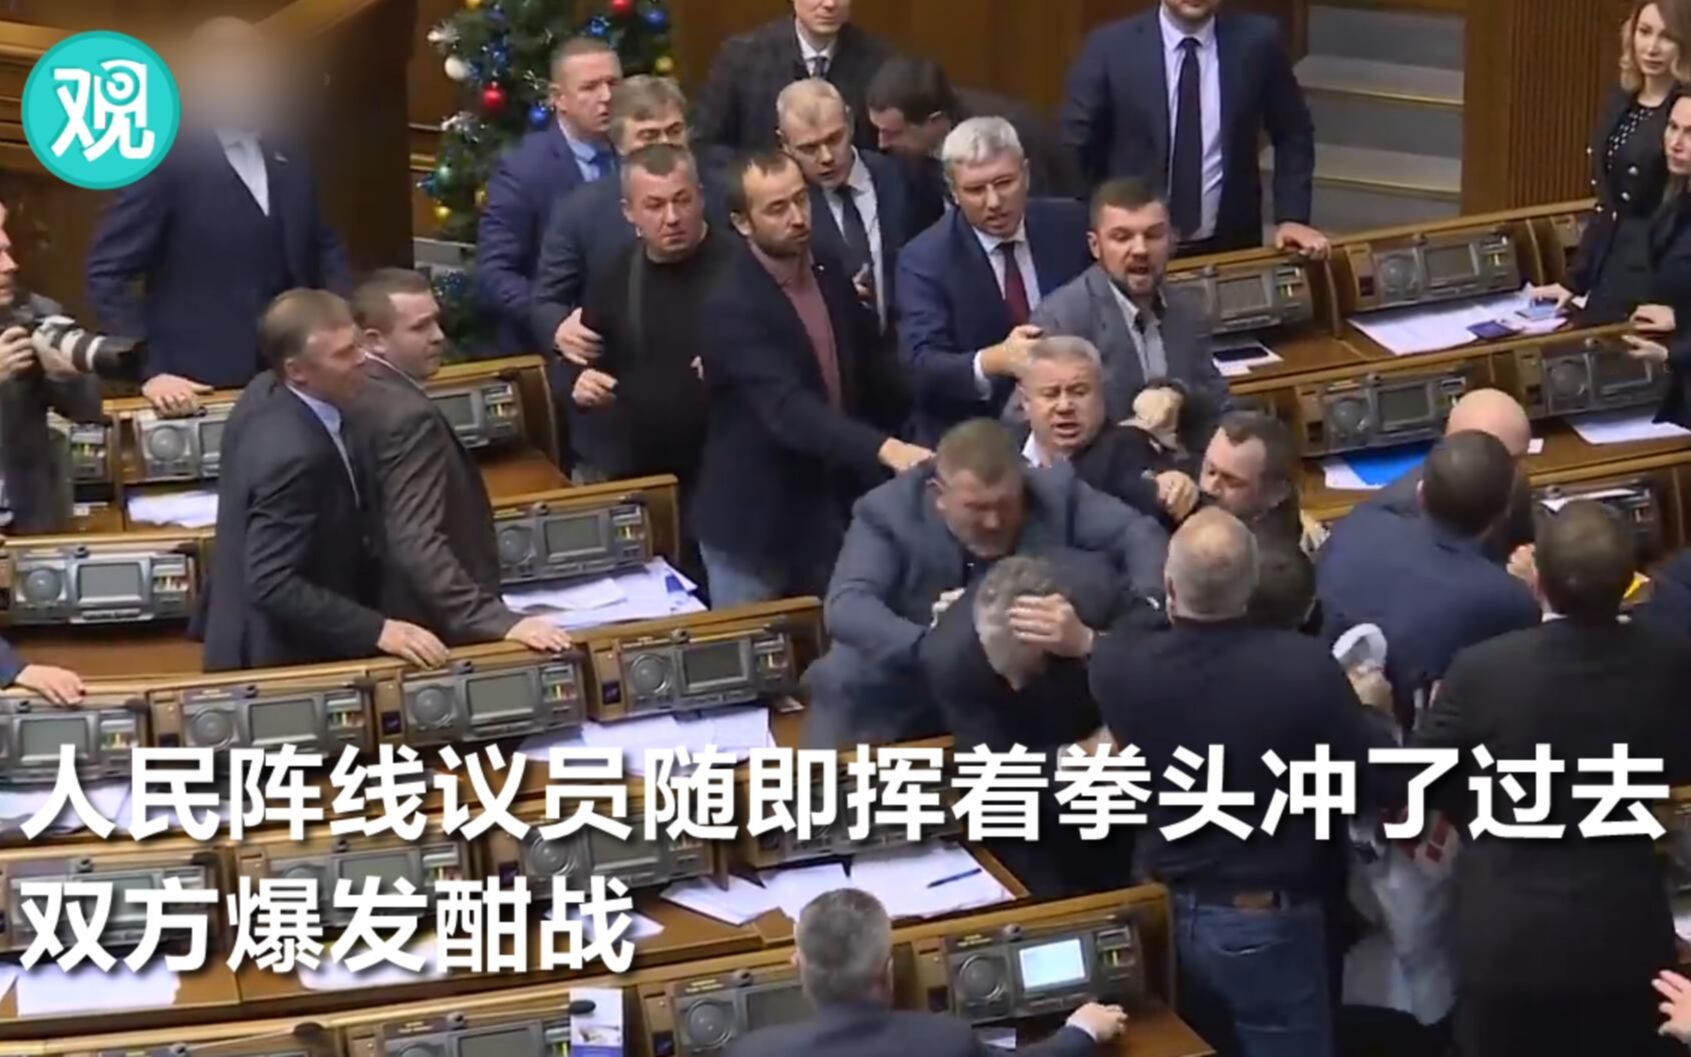 乌克兰议会稀松平常的一天又打架了